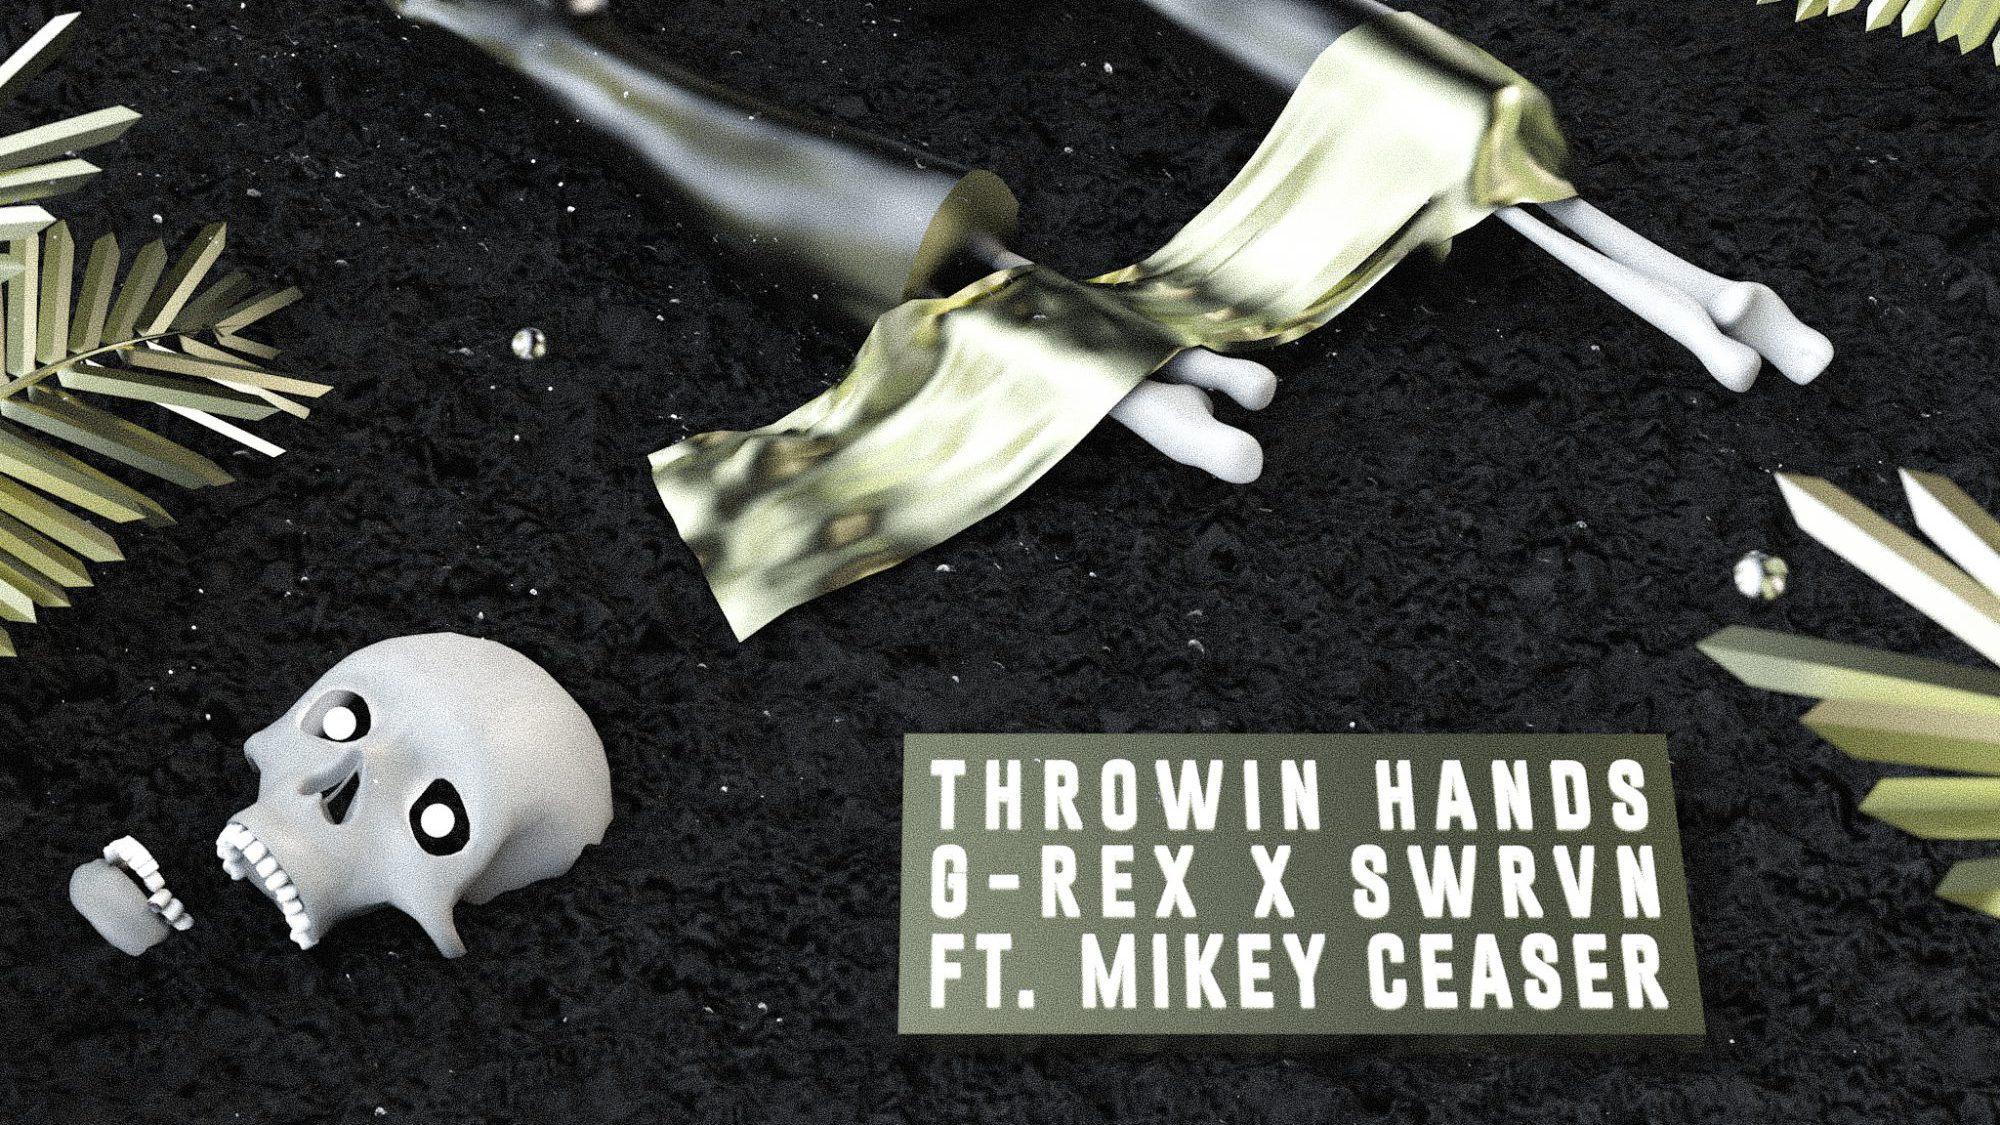 G-REX x SWRVN - Throwin' Hands